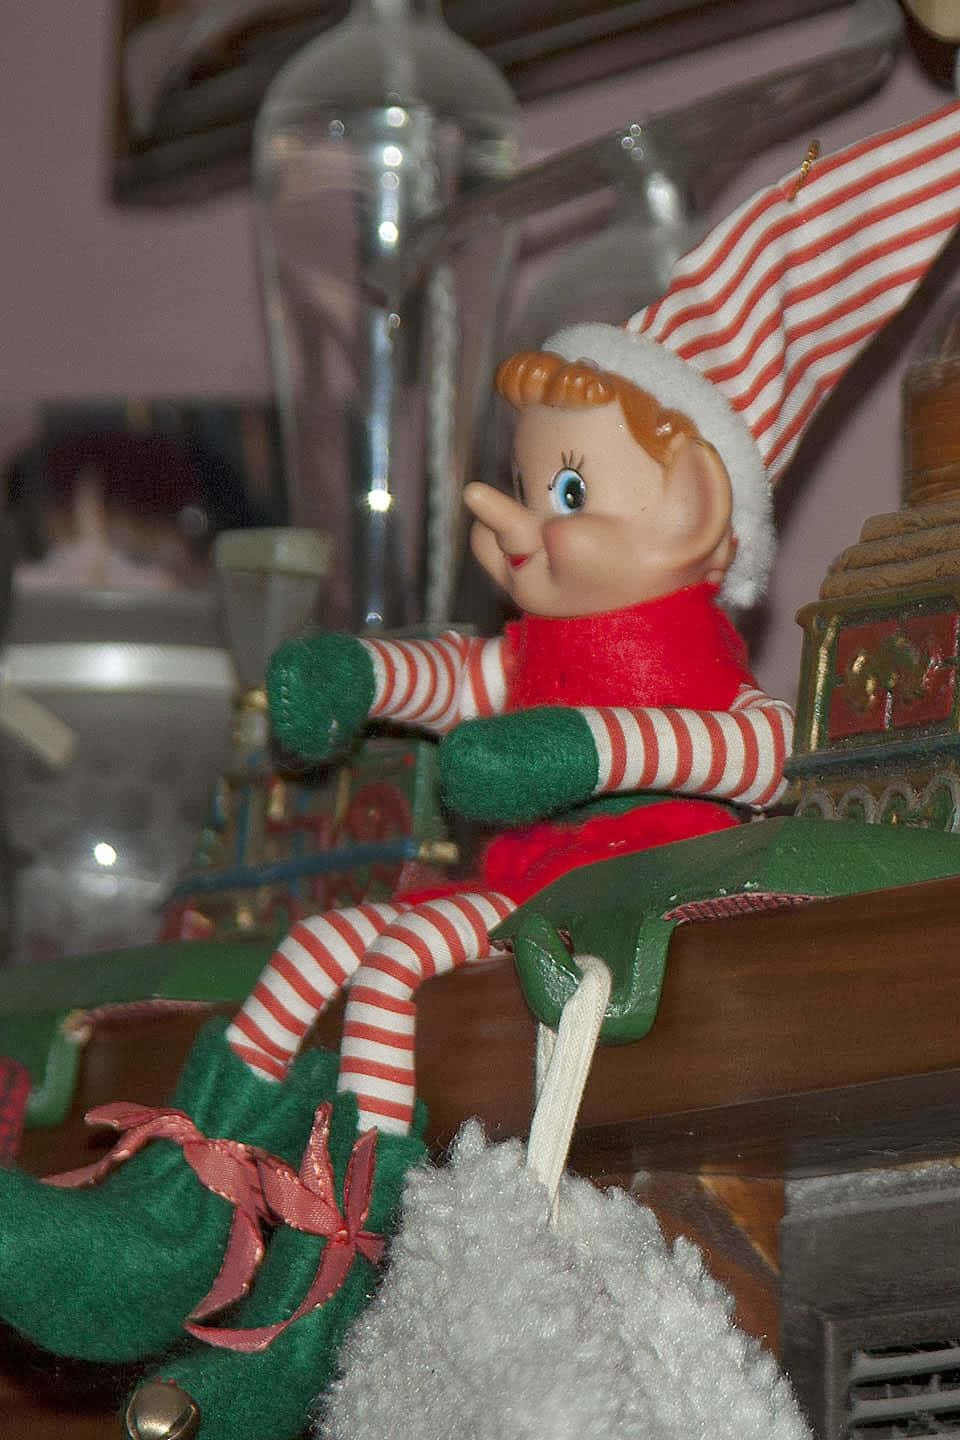 Verleihensie Ihrem Zuhause In Dieser Saison Mit Einem Elf On The Shelf Eine Prise Weihnachtszauber.